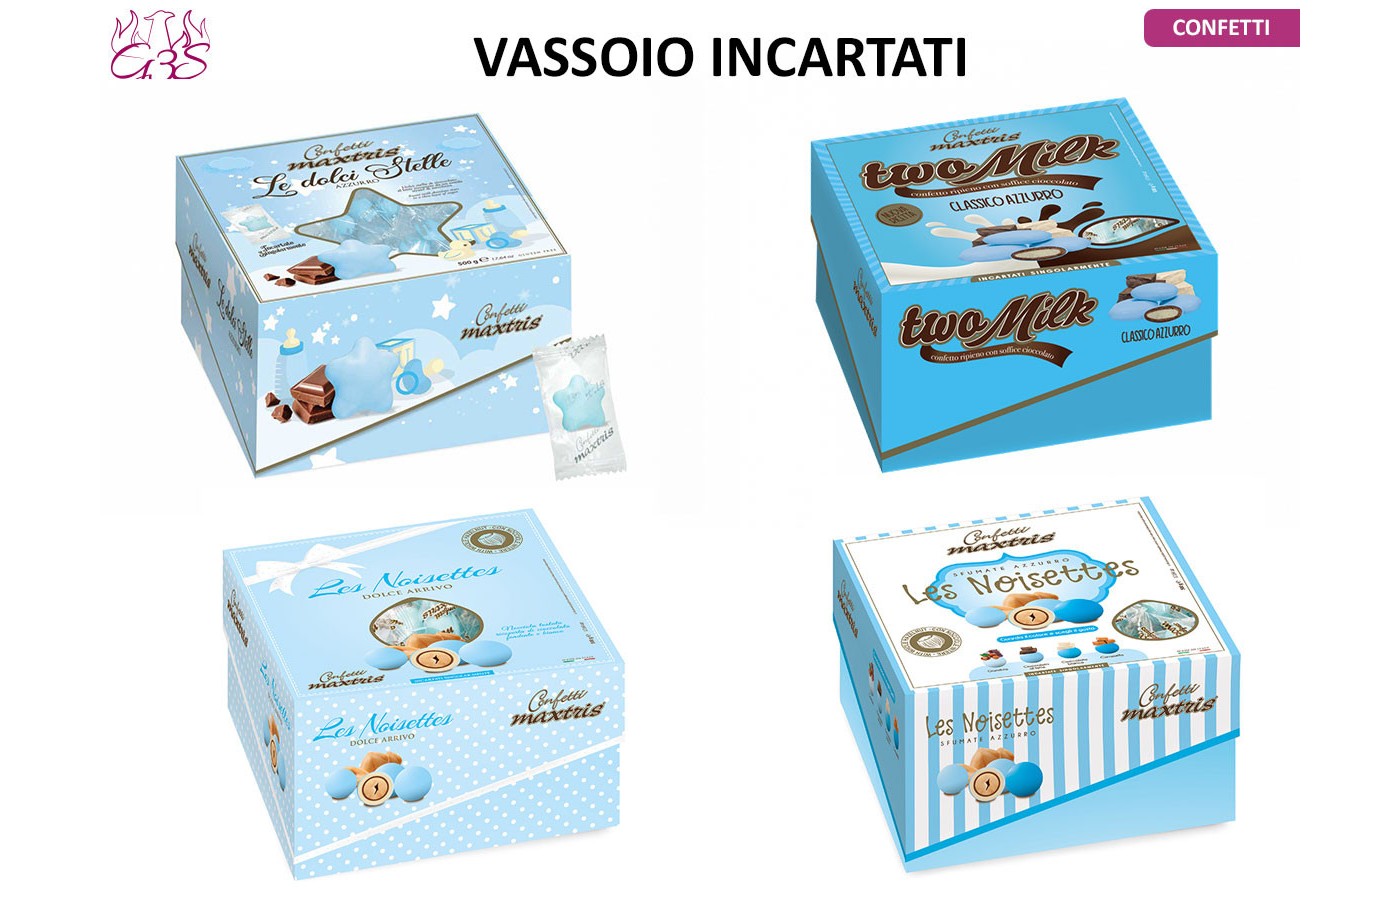 Confetti Maxtris Two milk Azzurri incartati - Confetti & Bomboniere